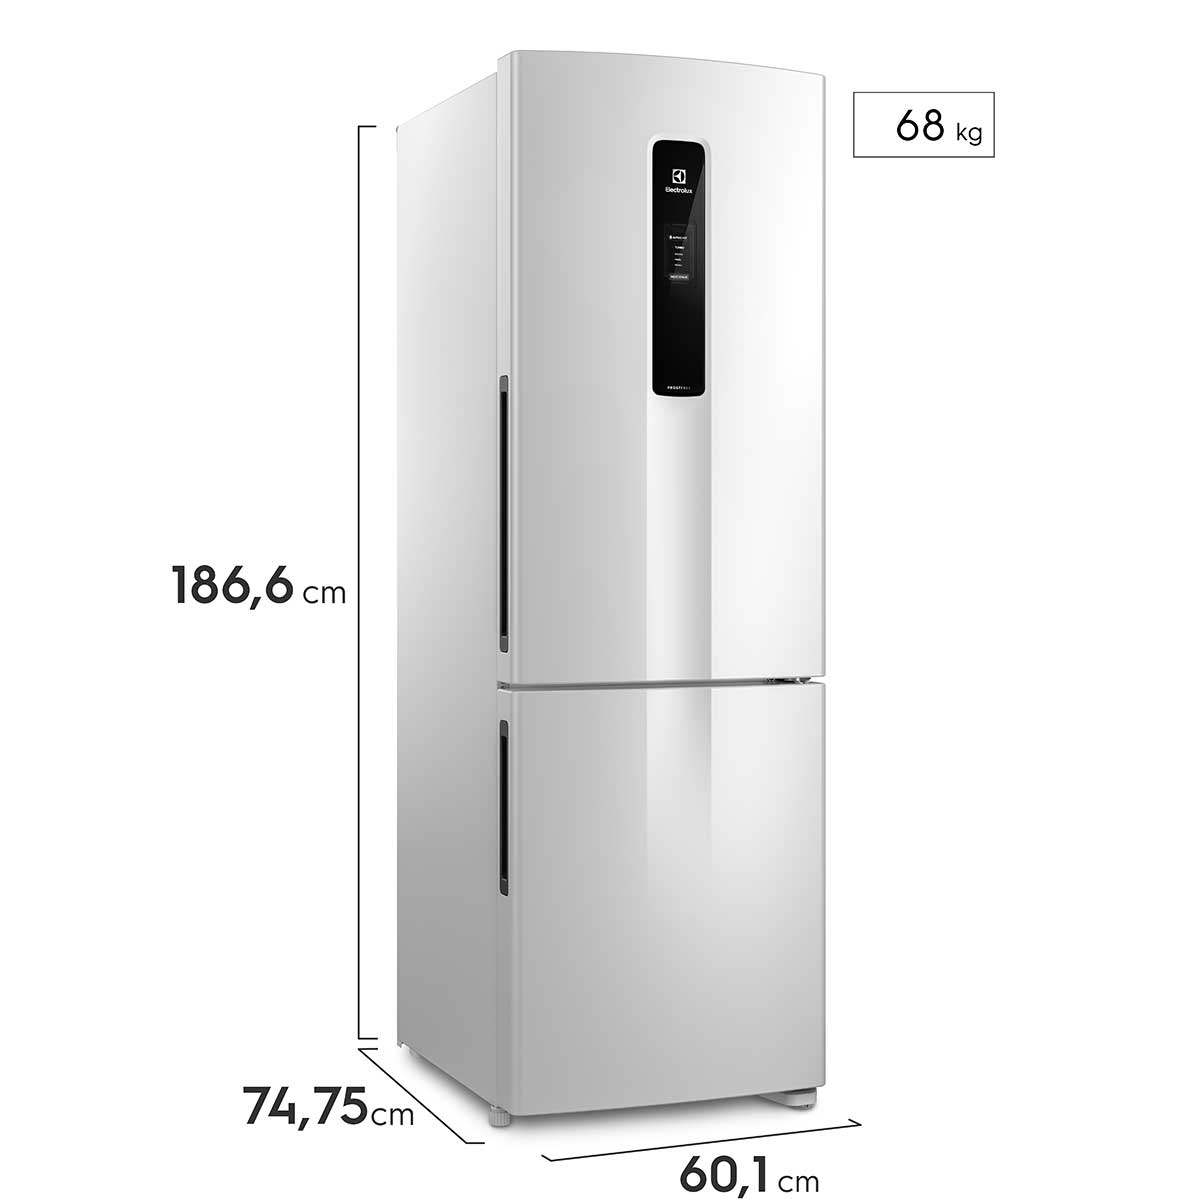 geladeira-electrolux-duas-portas-inverse-com-autosense-frost-free-db44-ff2p-iv-400l-b-220v-6.jpg